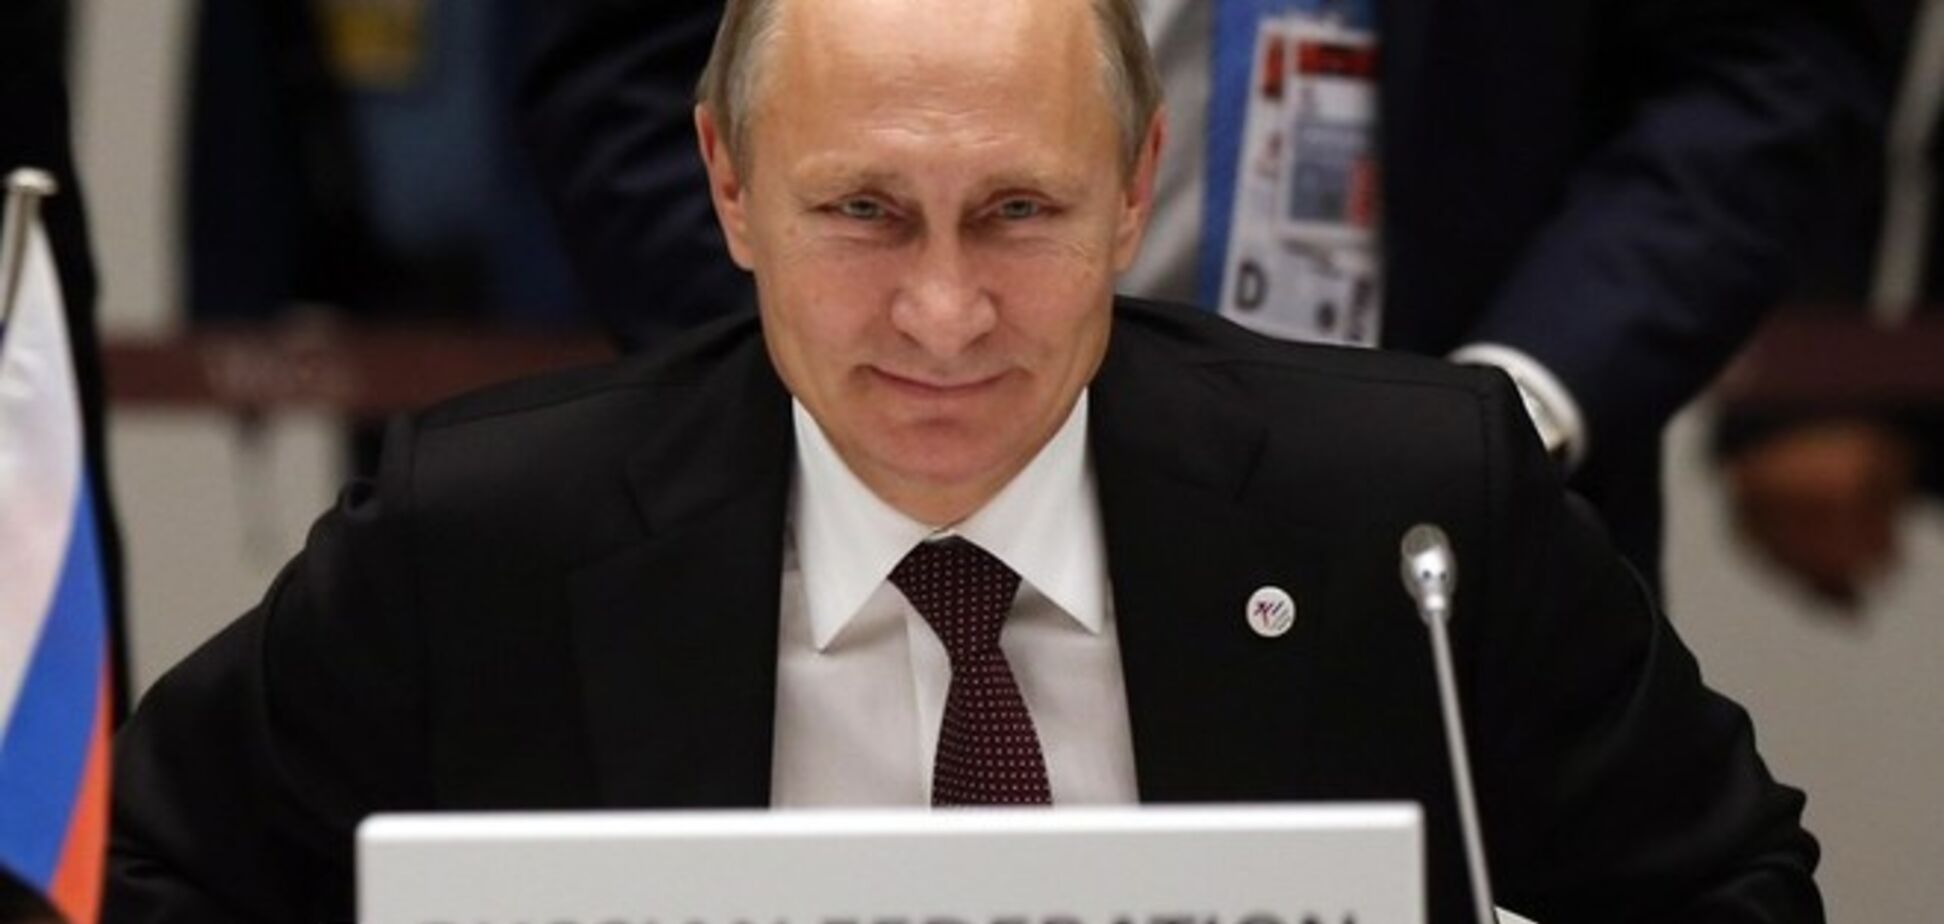 Ближайшее время покажет, чего ожидать от Путина, нельзя исключать худшего сценария – западные СМИ